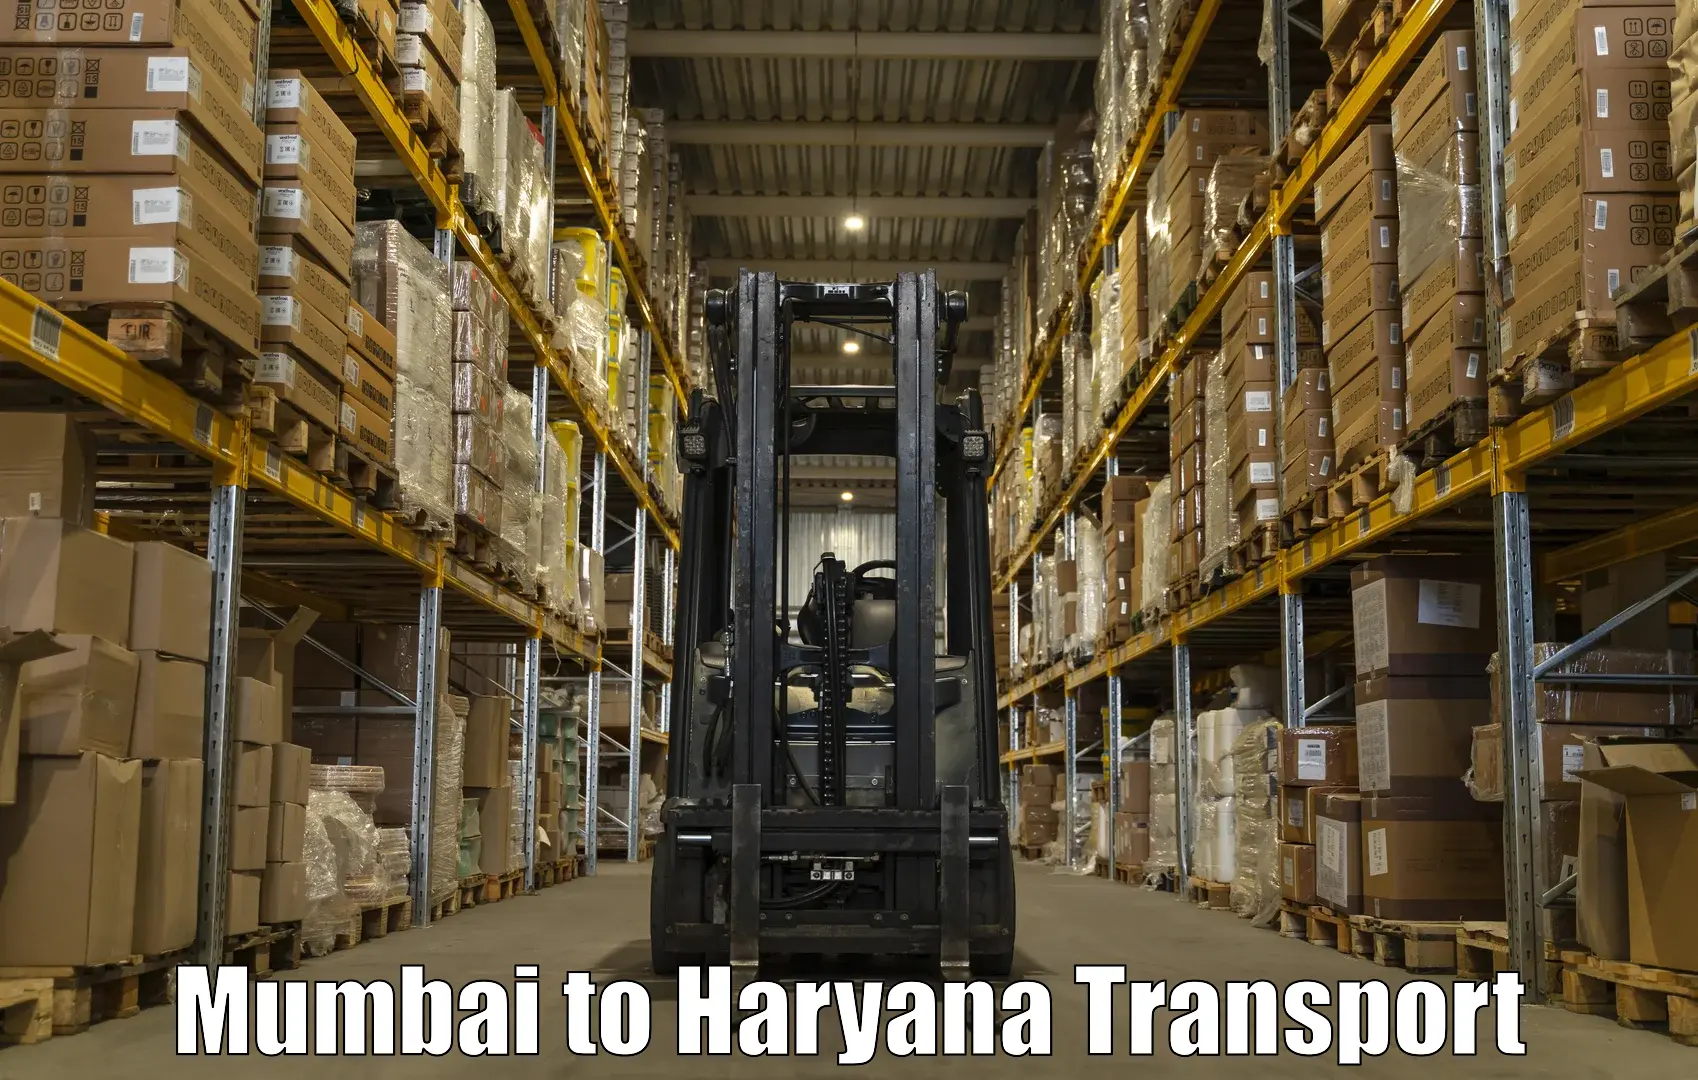 Bike shipping service Mumbai to Jhajjar